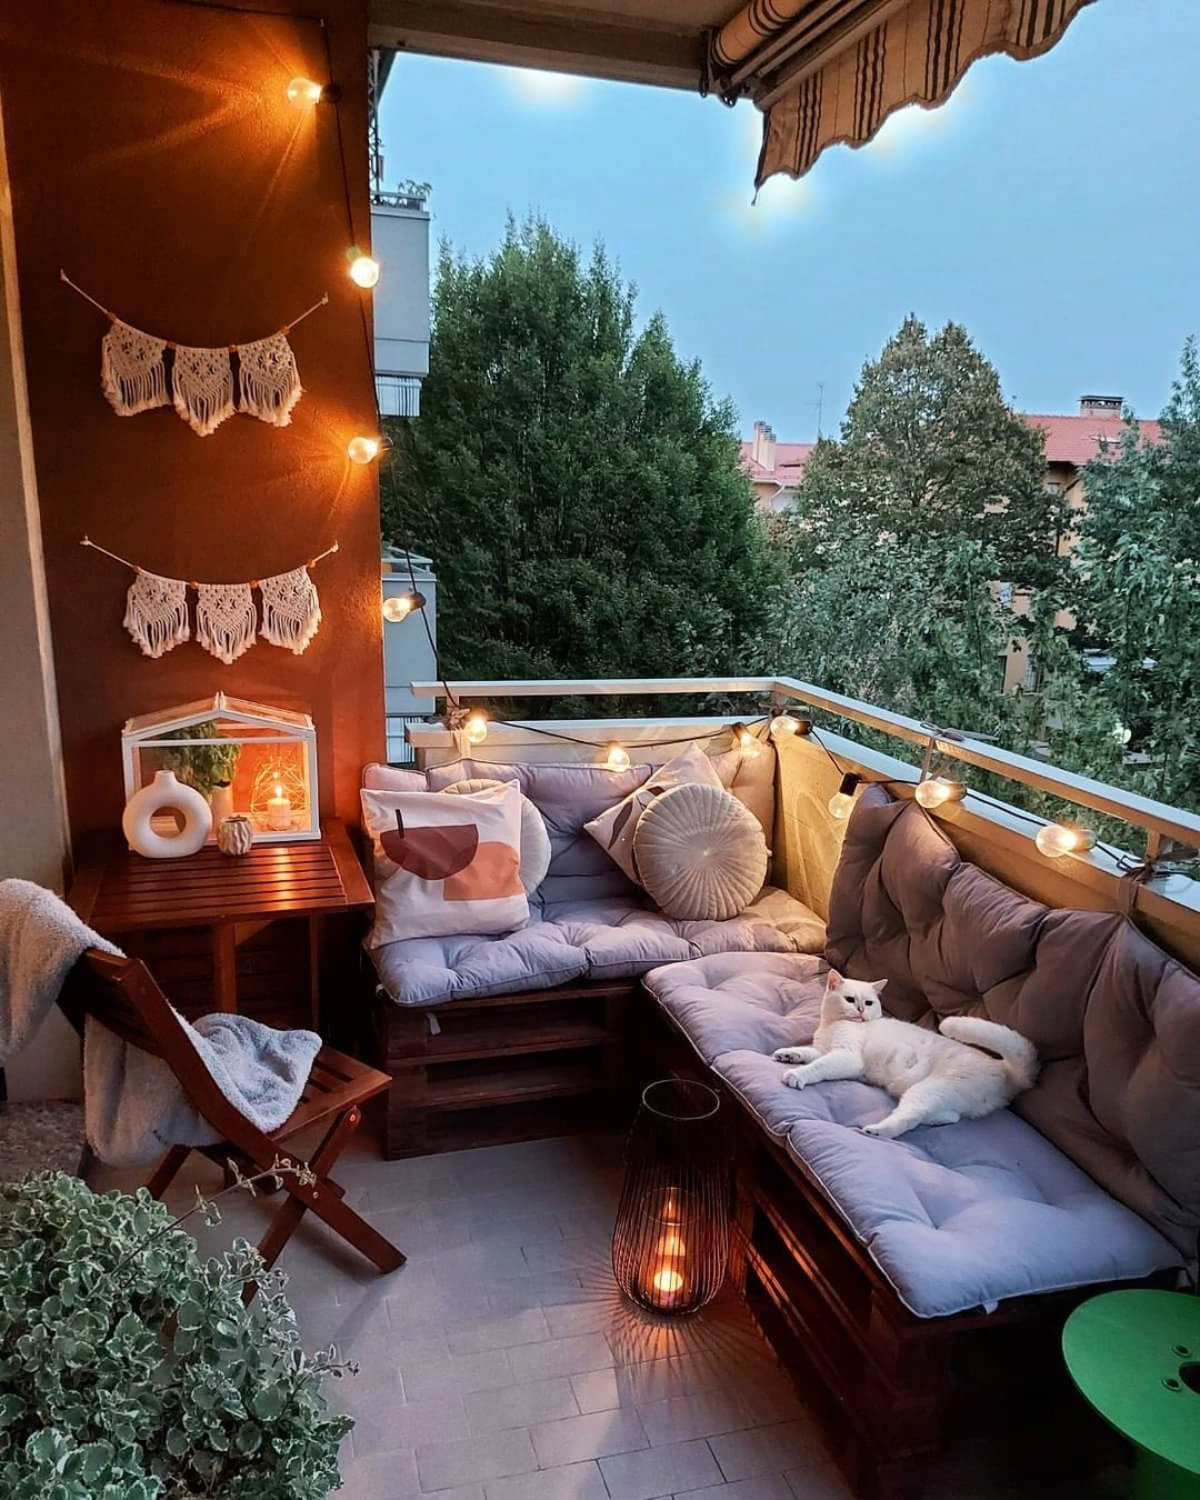 katze liegt auf möbeln auf kleinem balkon